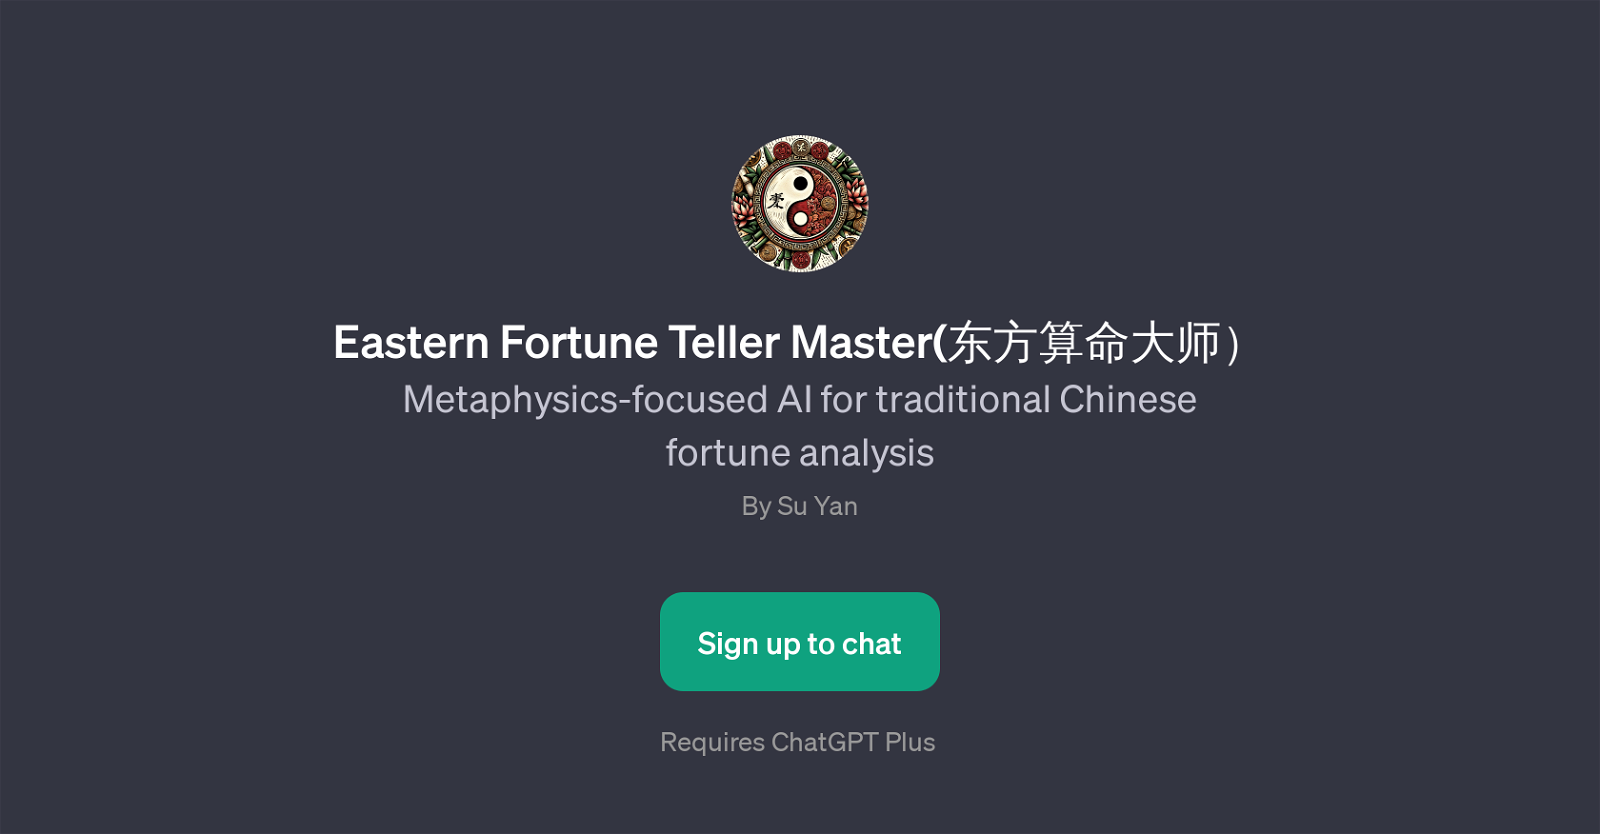 Eastern Fortune Teller Master website